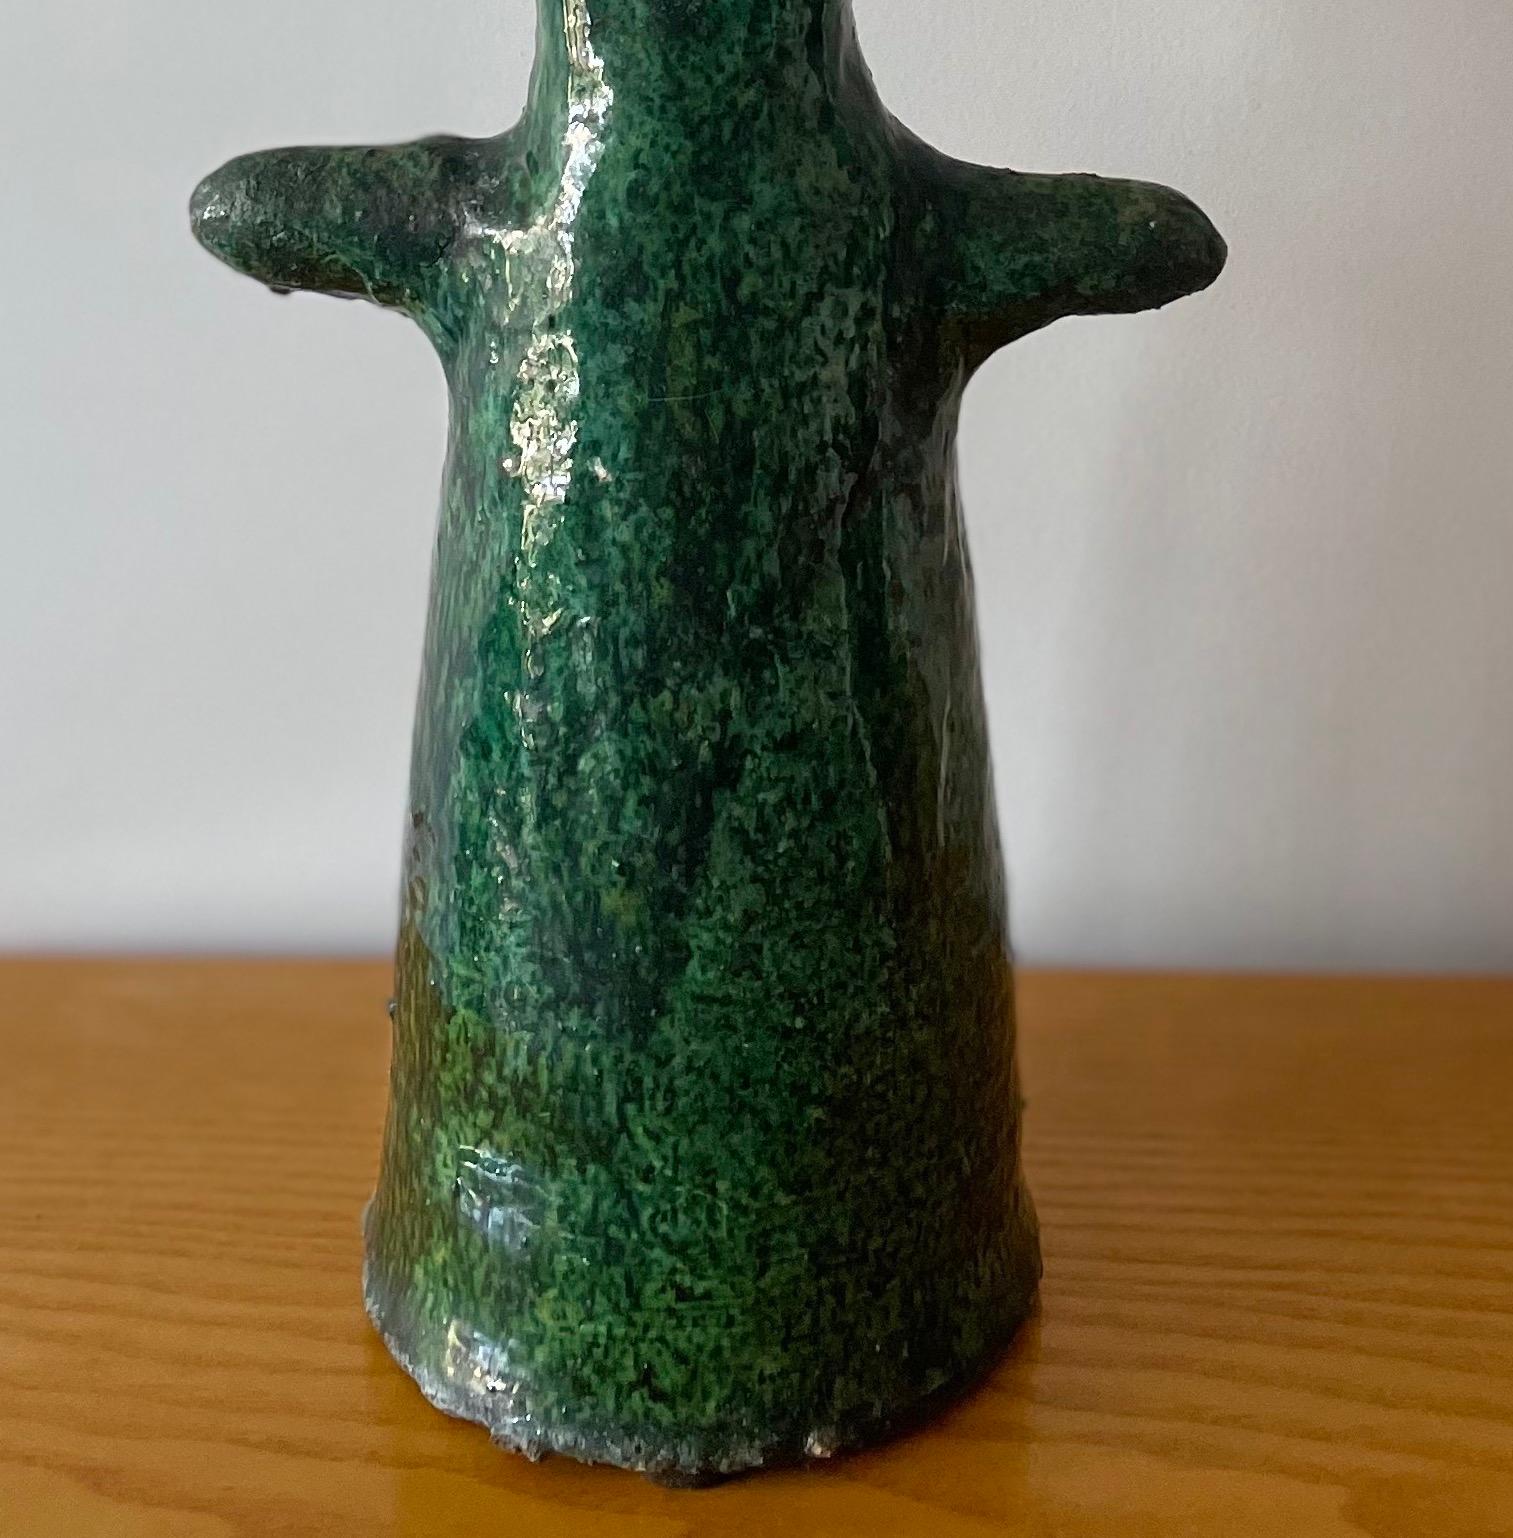 Vase Sculpture Marocaine en Céramique Tamegroute

Ce vase vintage émaillé vert, fabriqué à la main, est une simple sculpture du village de Tamegroute, dans le sud du Maroc, où d'habiles potiers ont pratiqué des techniques locales qui ont été